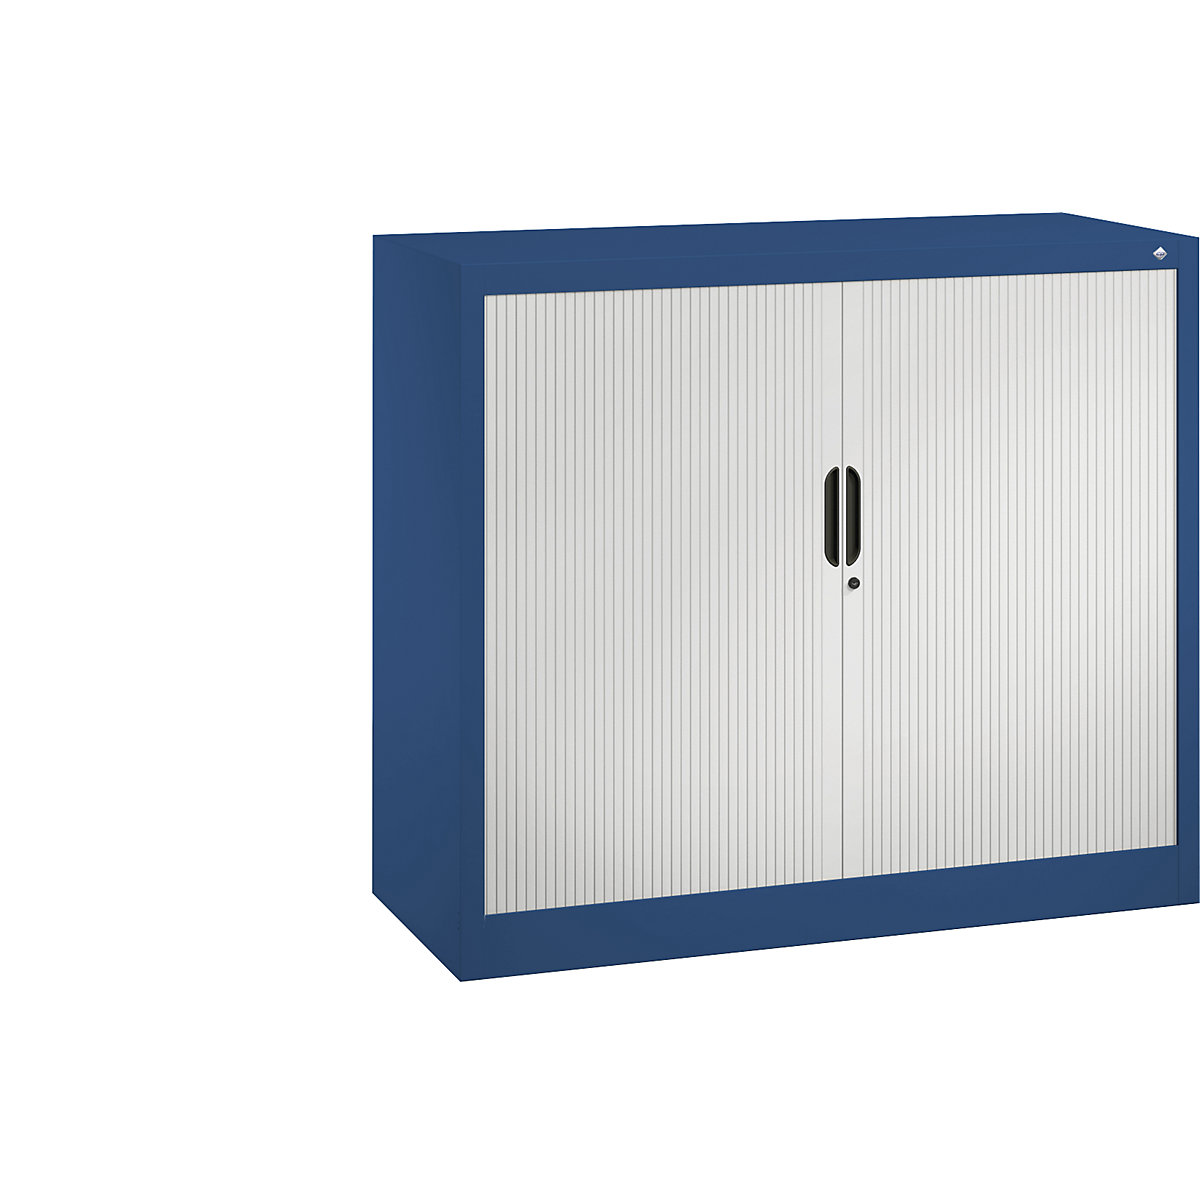 Žaluziová skříň s horizontální žaluzií – C+P, v x š x h 1030 x 1200 x 420 mm, 2 police, 2,5 výšky pořadačů, hořcově modrá / světle šedá-6